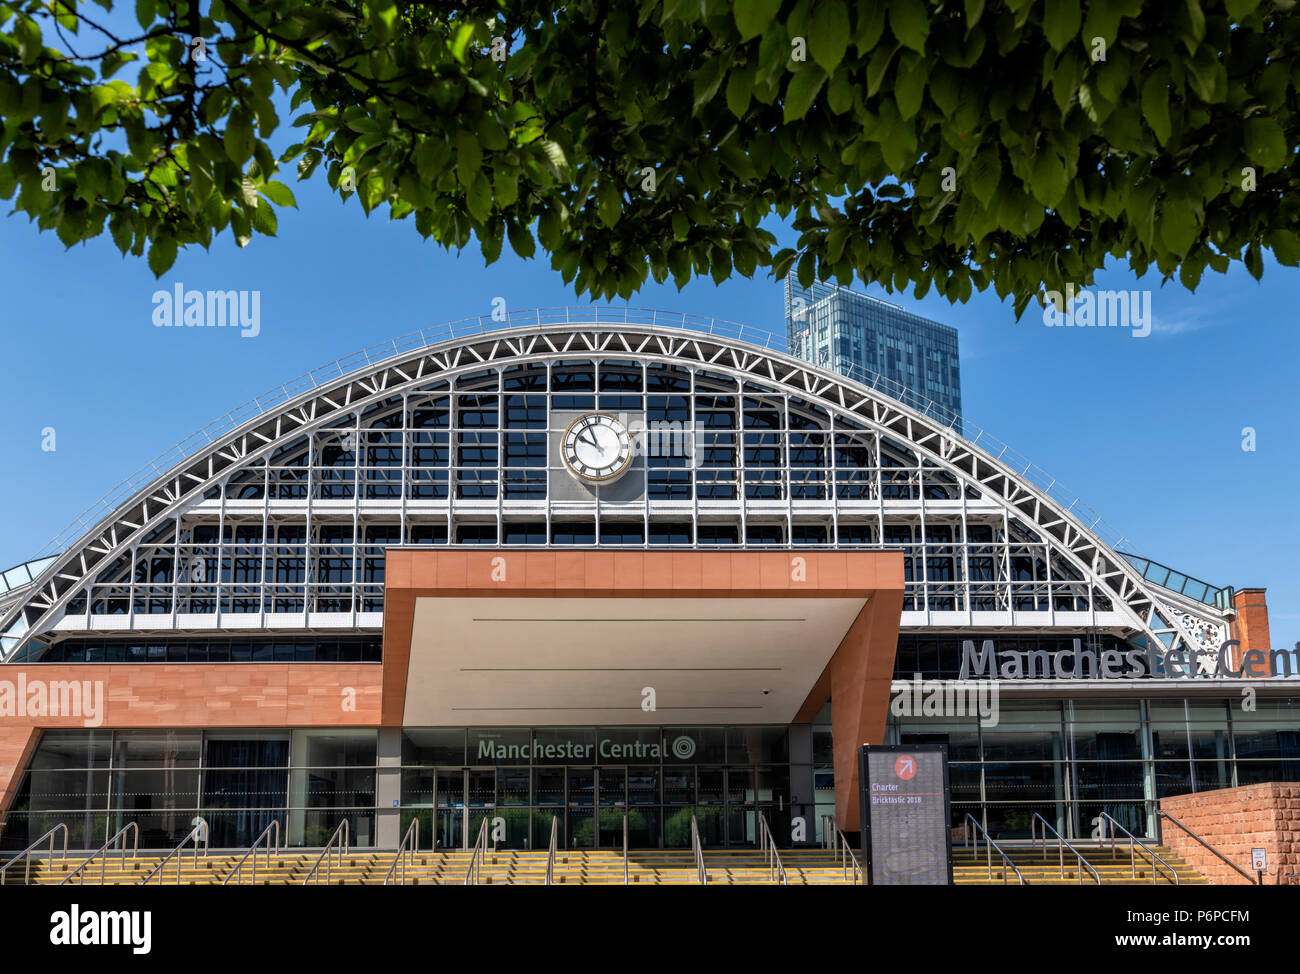 Le centre de conventions de Manchester Central aussi connu sous le nom de G-MEX était autrefois la principale gare de Manchester Banque D'Images